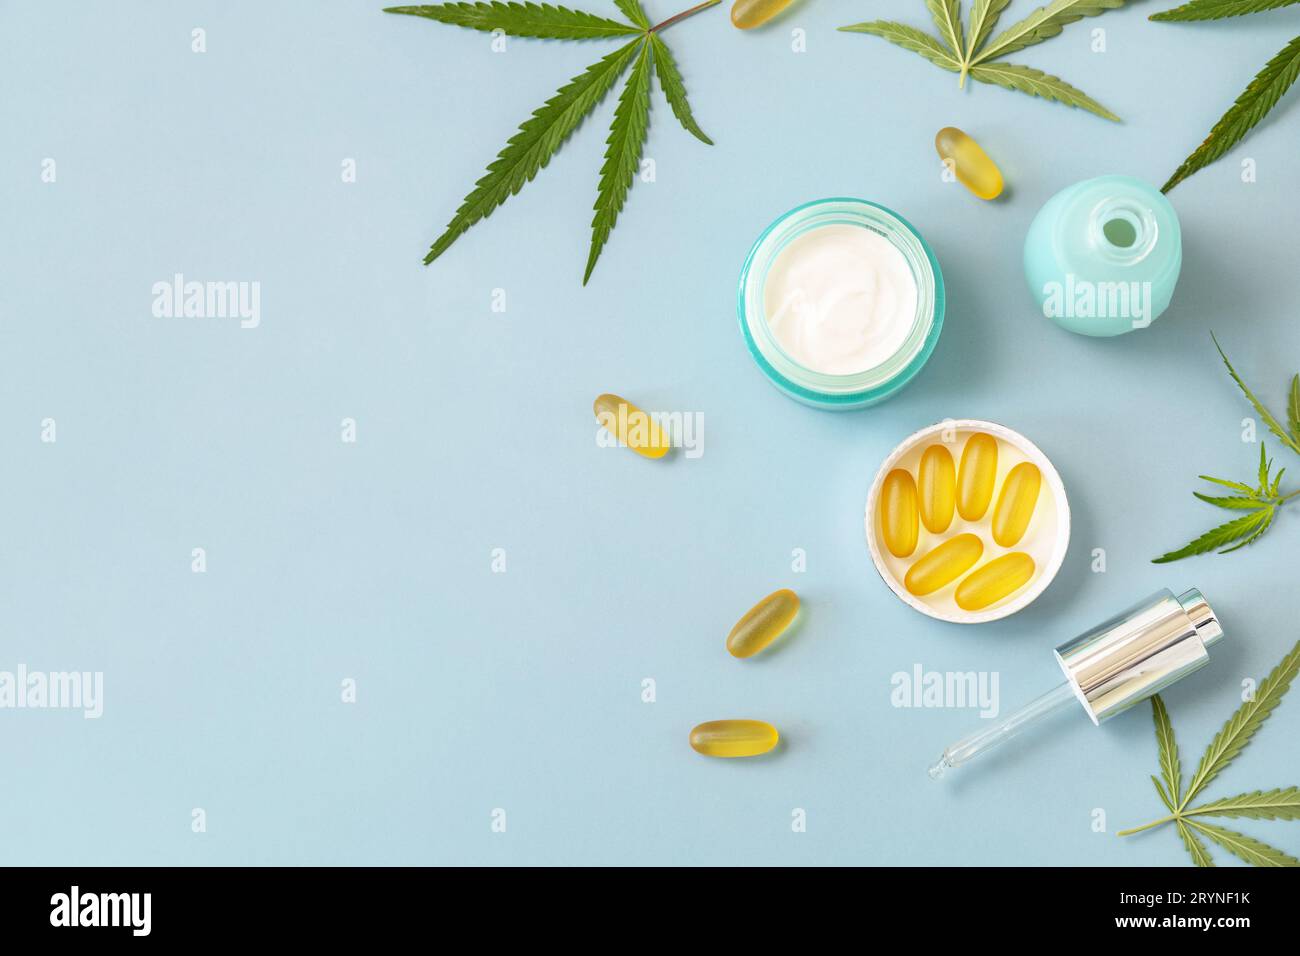 Herbal alternative Medicine Concept, cosmetici olio CBD. Prodotto cosmetico per la cura della pelle con foglie di cannabis. Crema idratante, siero, tappi Foto Stock